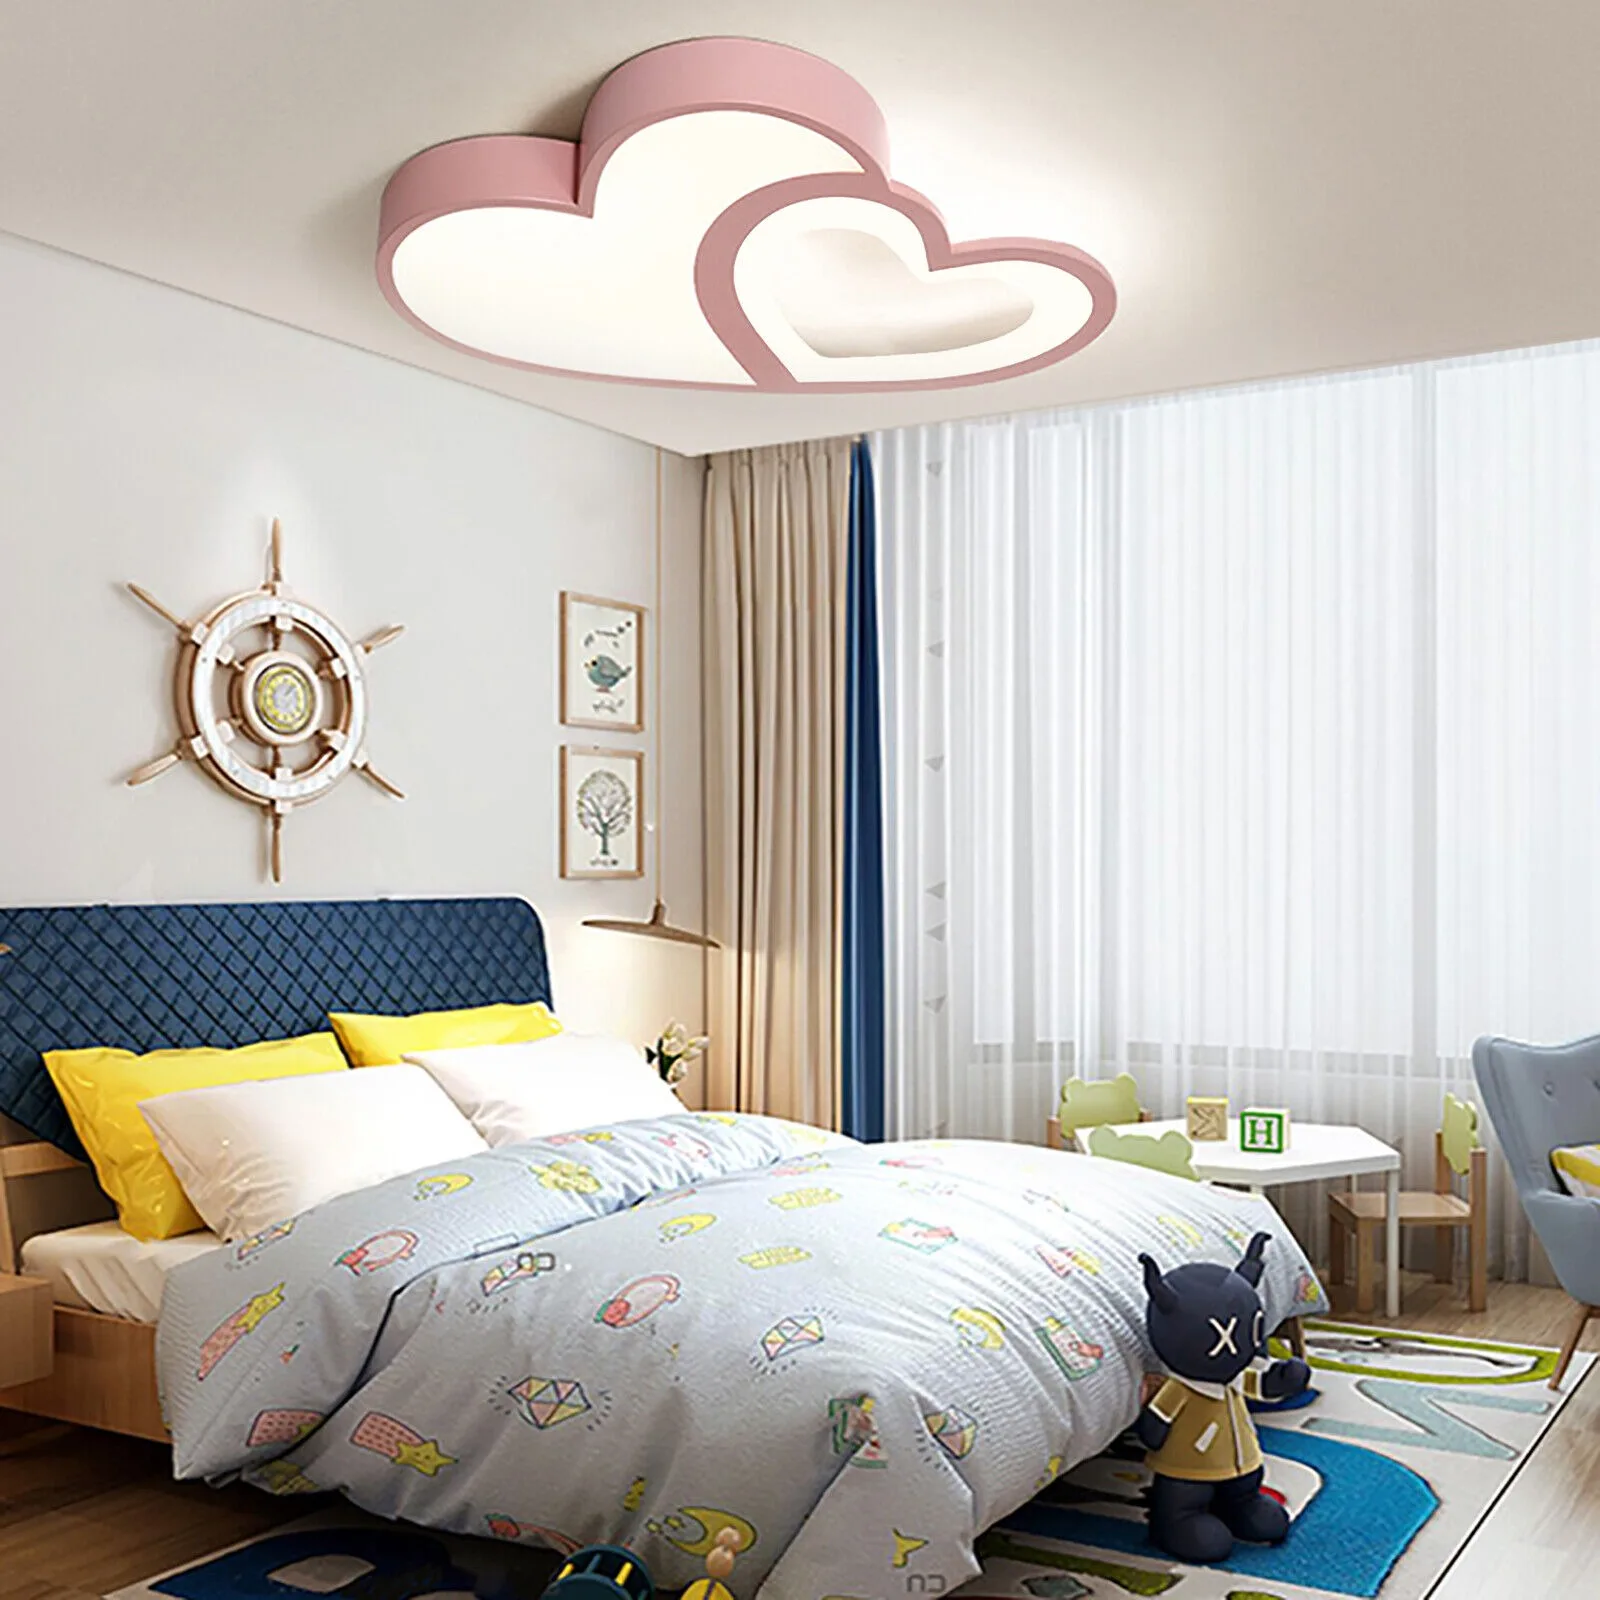 

US Modern Heart Shape LED Lamp Kids Room Ceiling Light Fixture Flush Mount US HOT